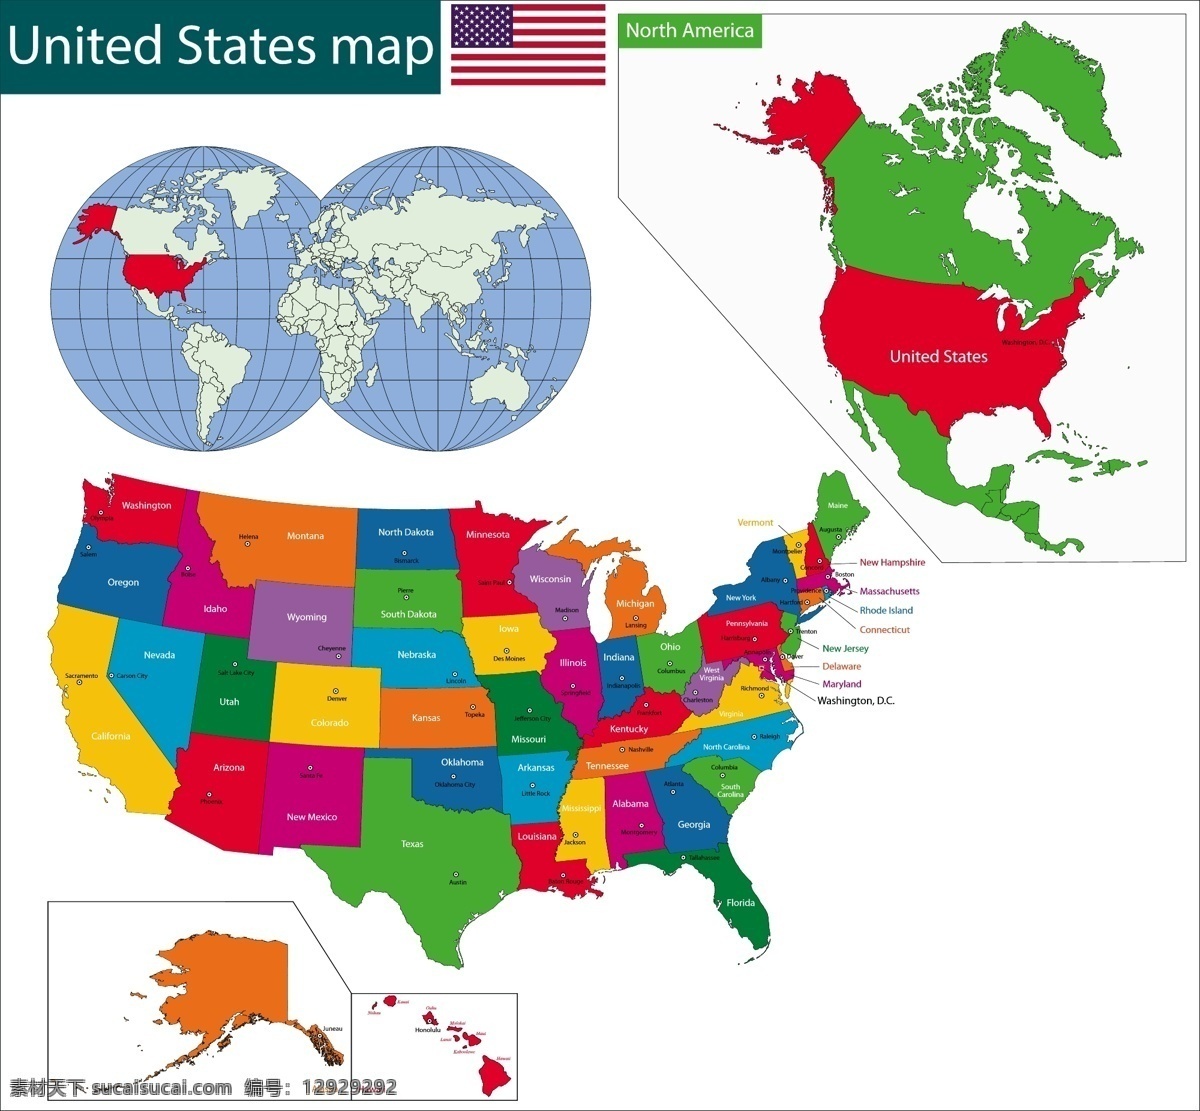 美国 合众国 国家 地图 矢量 模板下载 国旗 国家地图 世界地图 彩色地图 世界版图 矢量地图 生活百科 矢量素材 白色